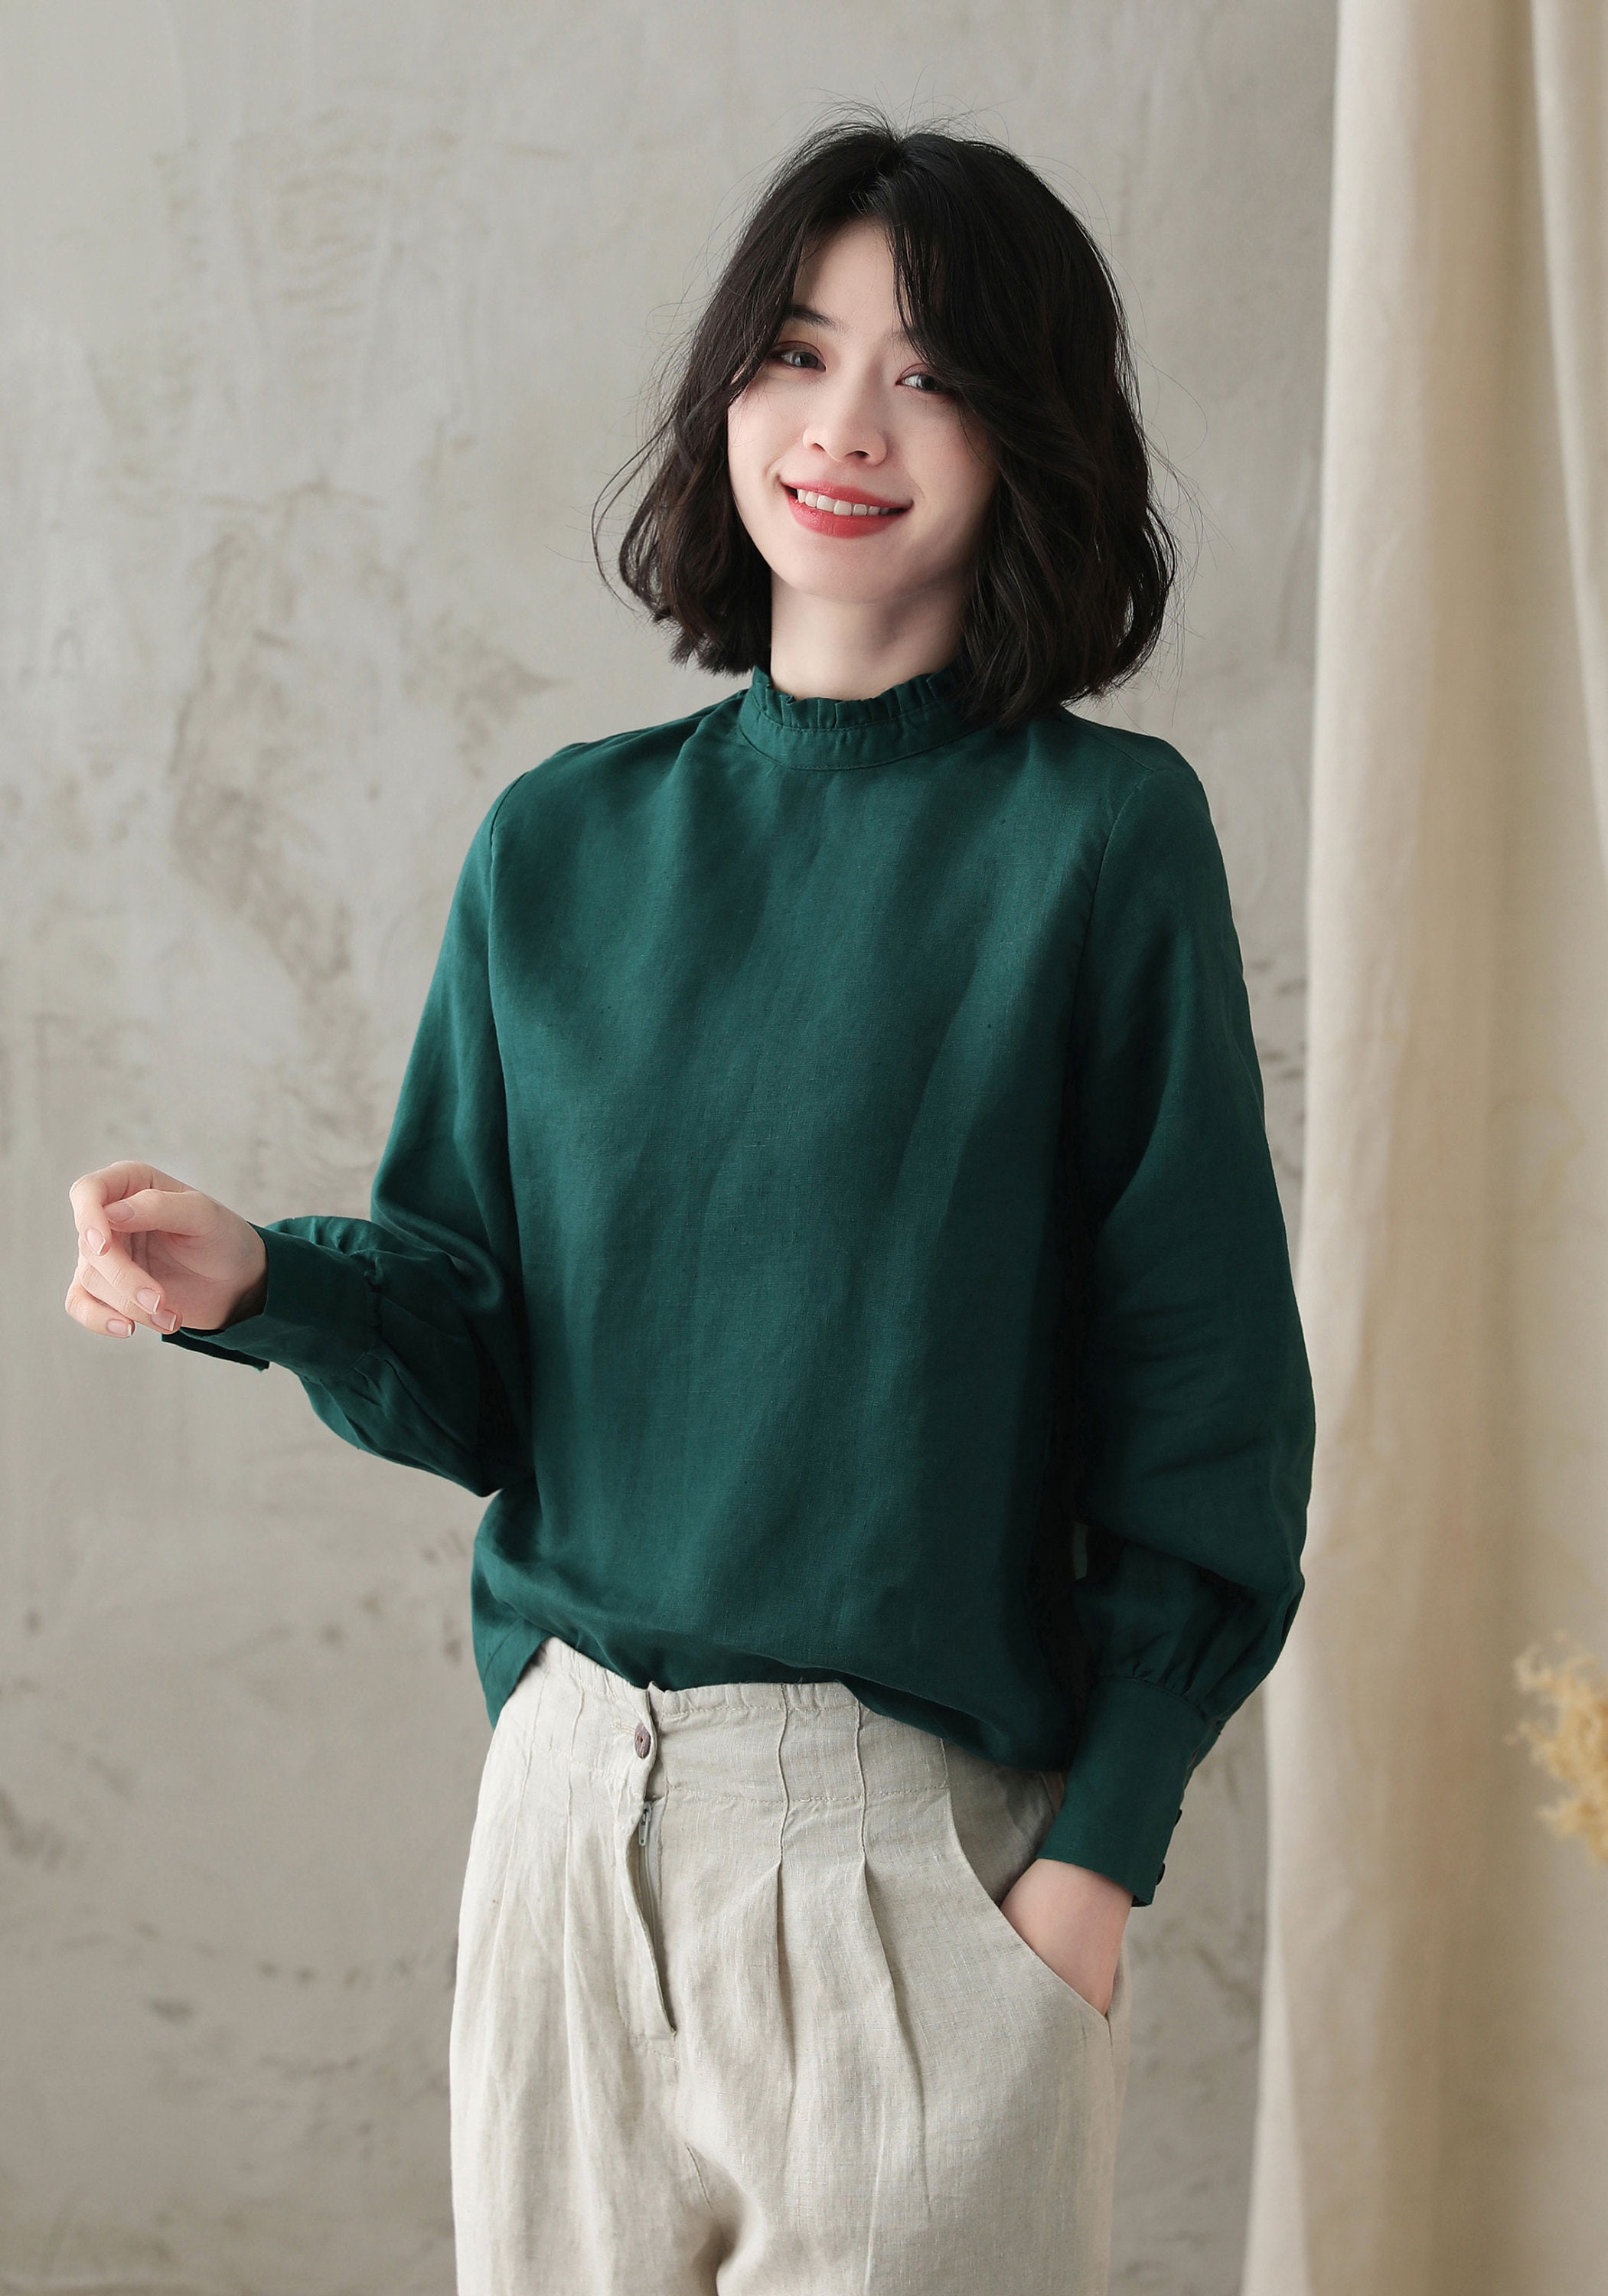 Long sleeve Linen Blouse in green Causal Linen Top Women | Etsy